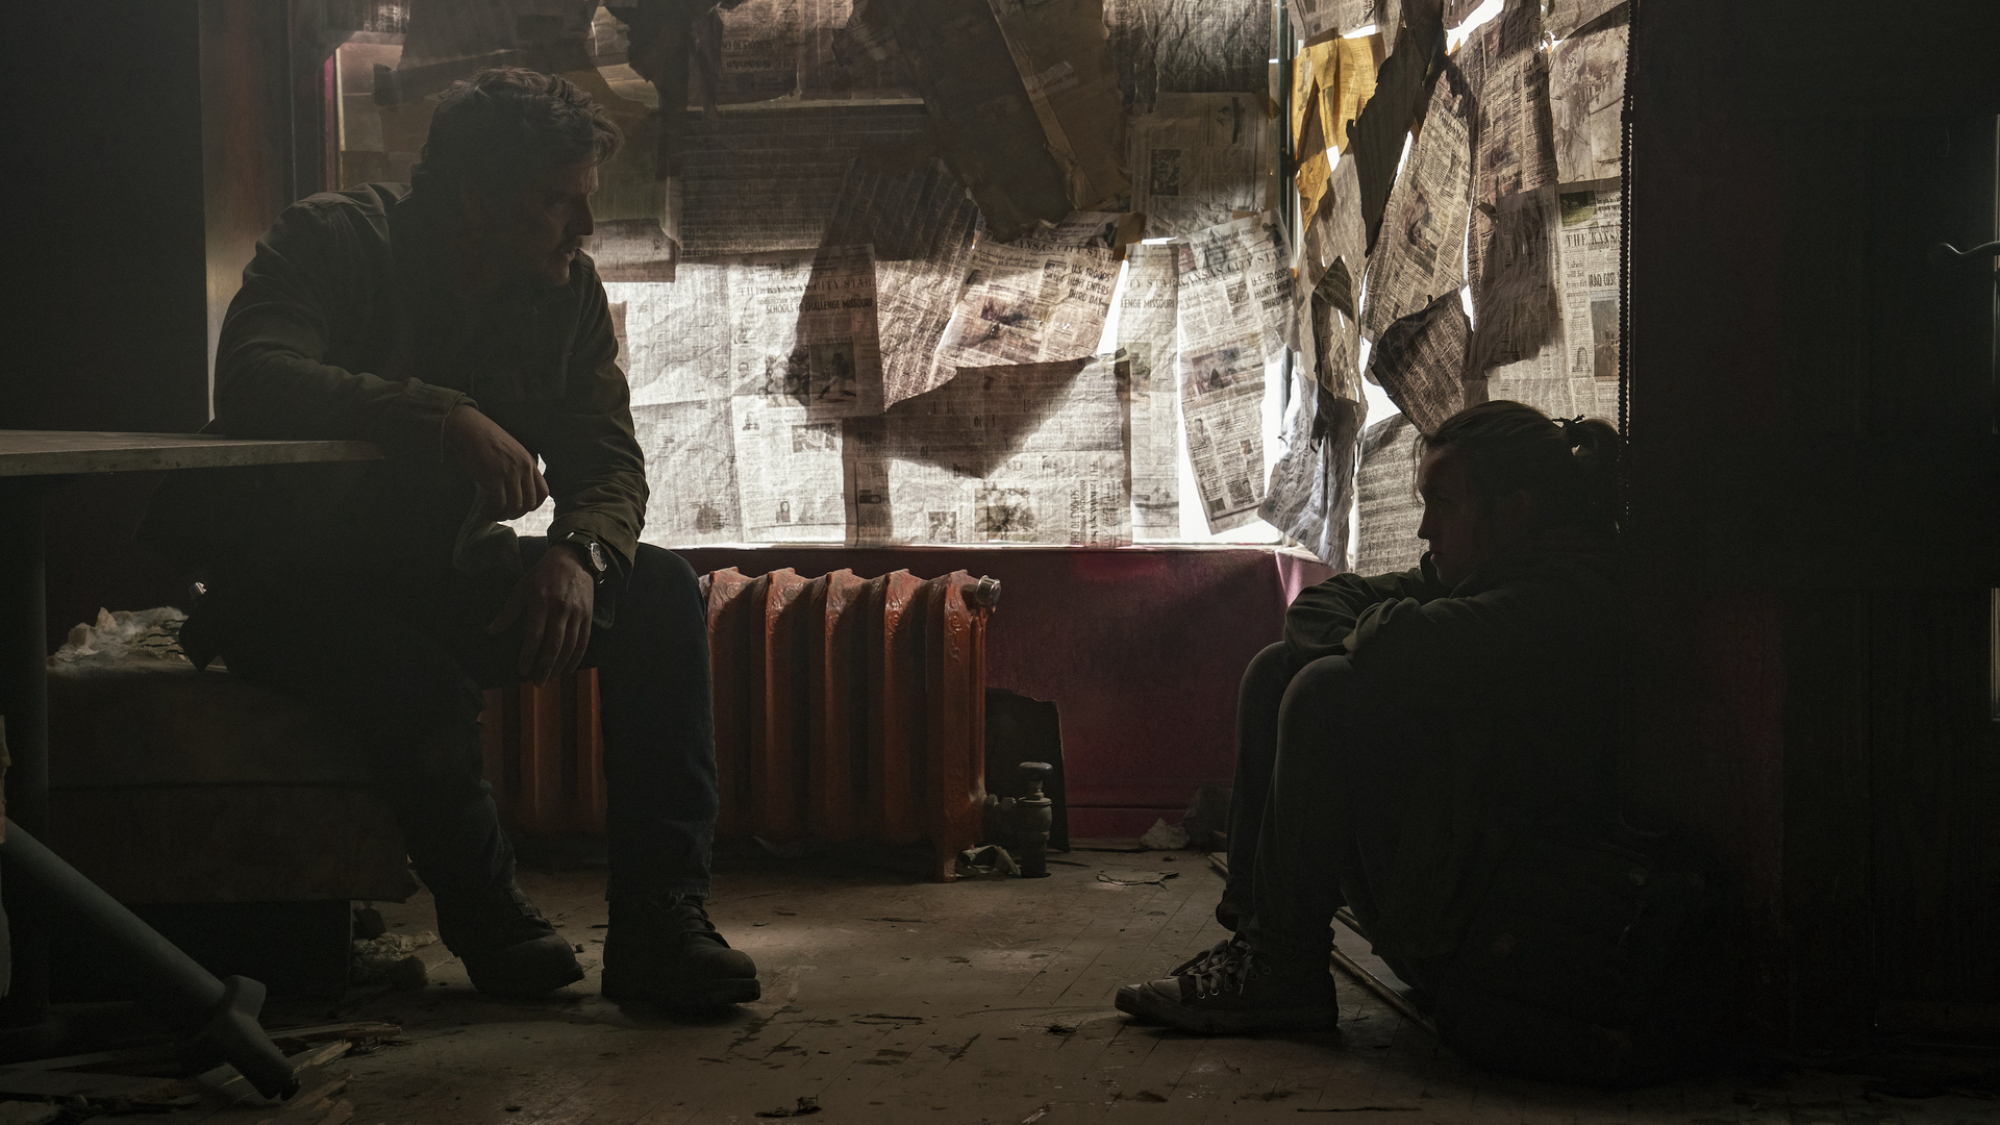 Un homme et un adolescent sont assis cachés dans une pièce dont les fenêtres sont recouvertes de papier journal.